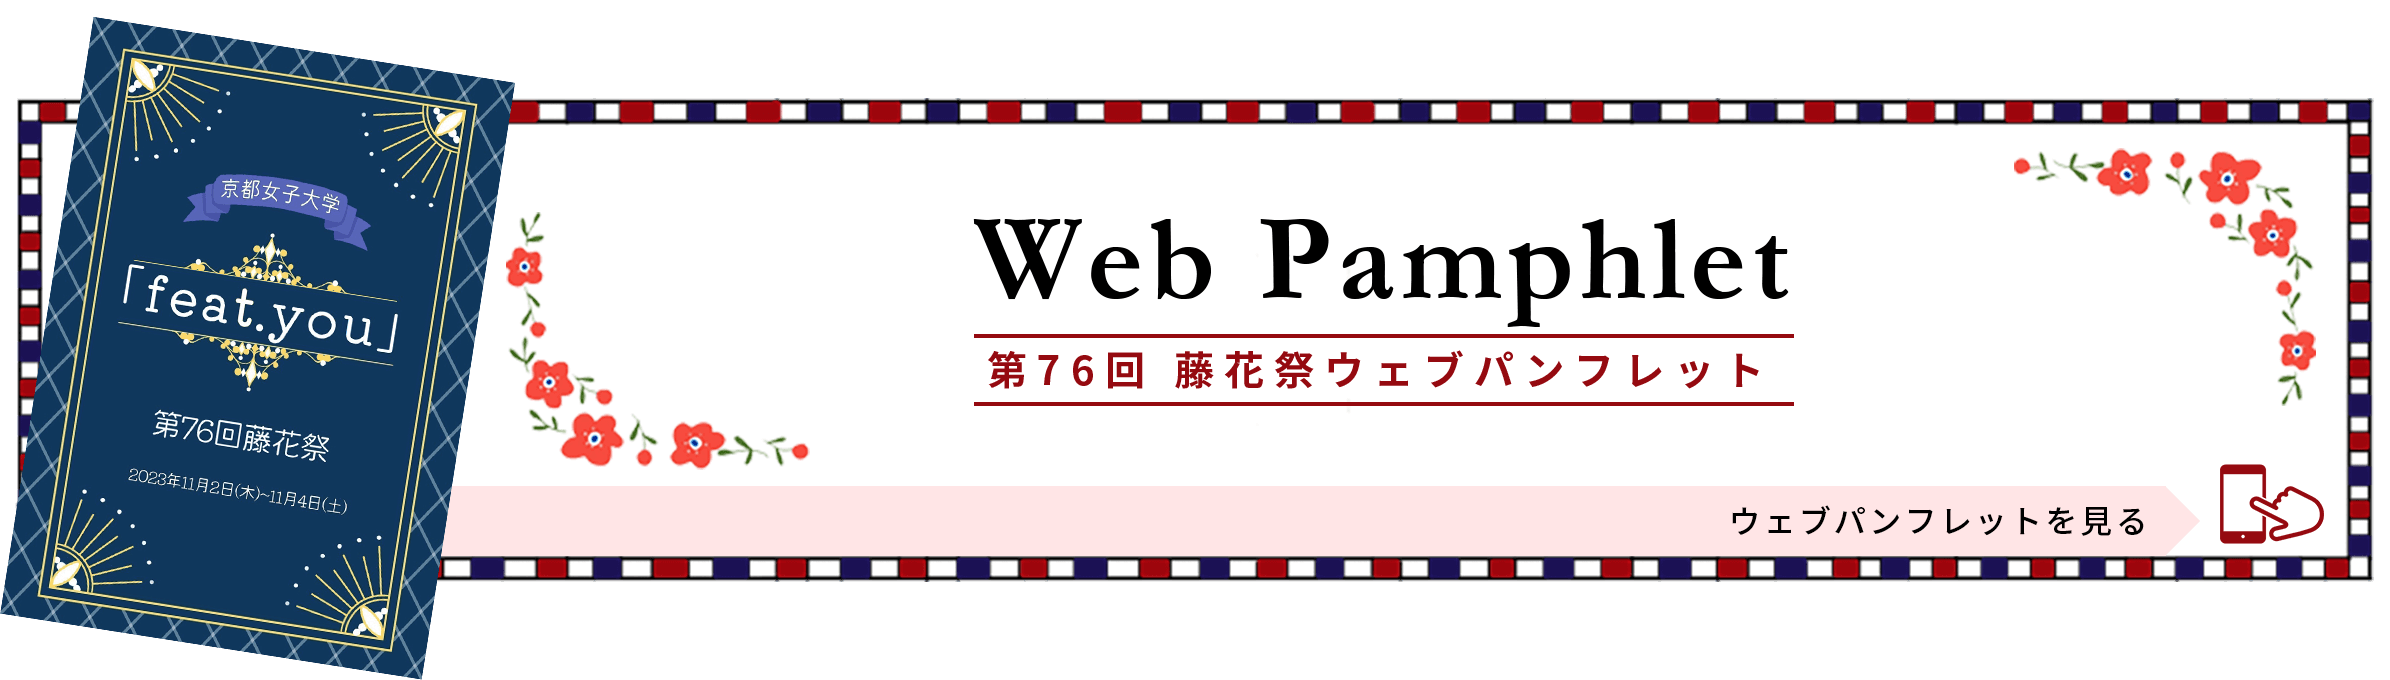 Web Pamphlet